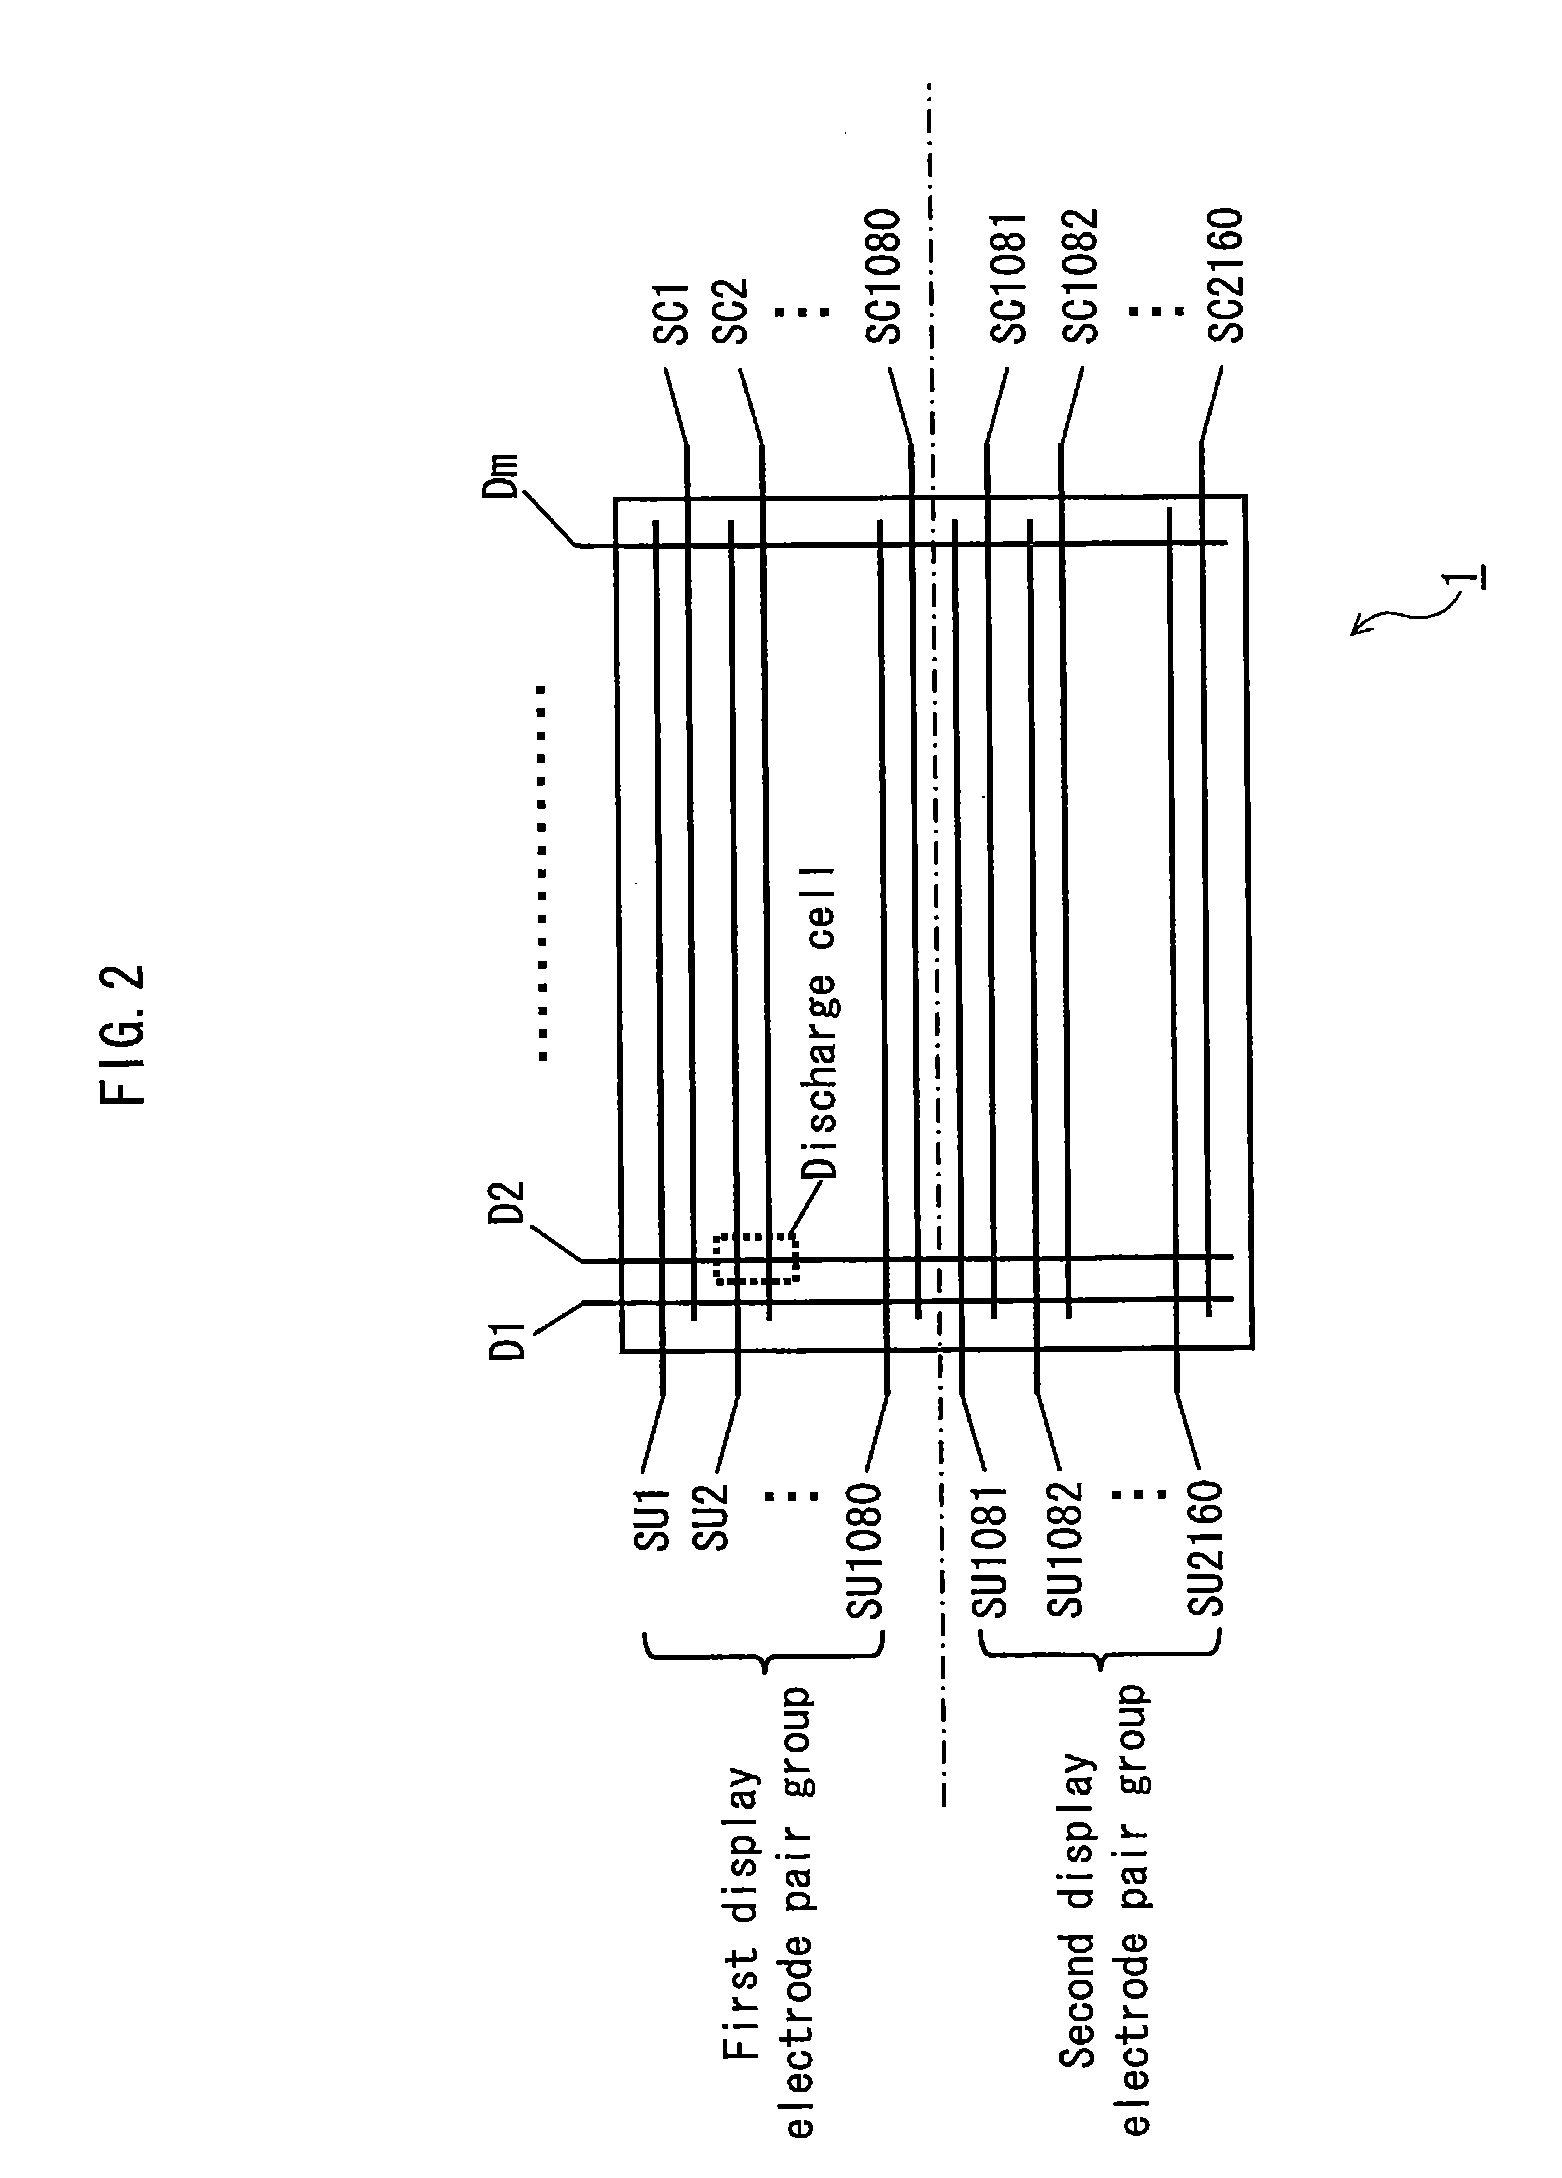 Method for producing plasma display panel